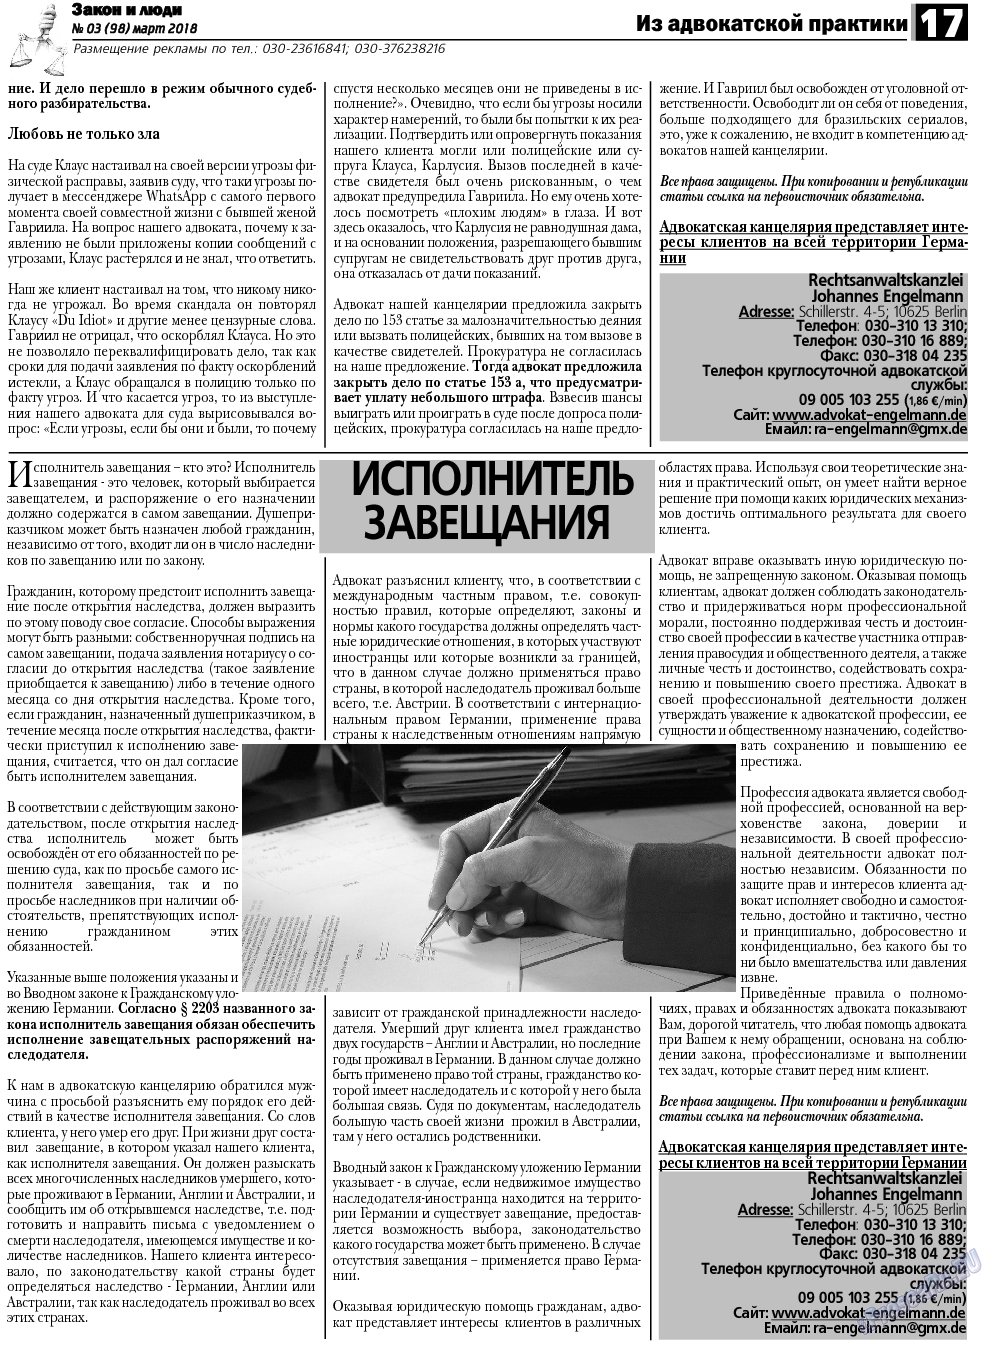 Закон и люди, газета. 2018 №3 стр.17